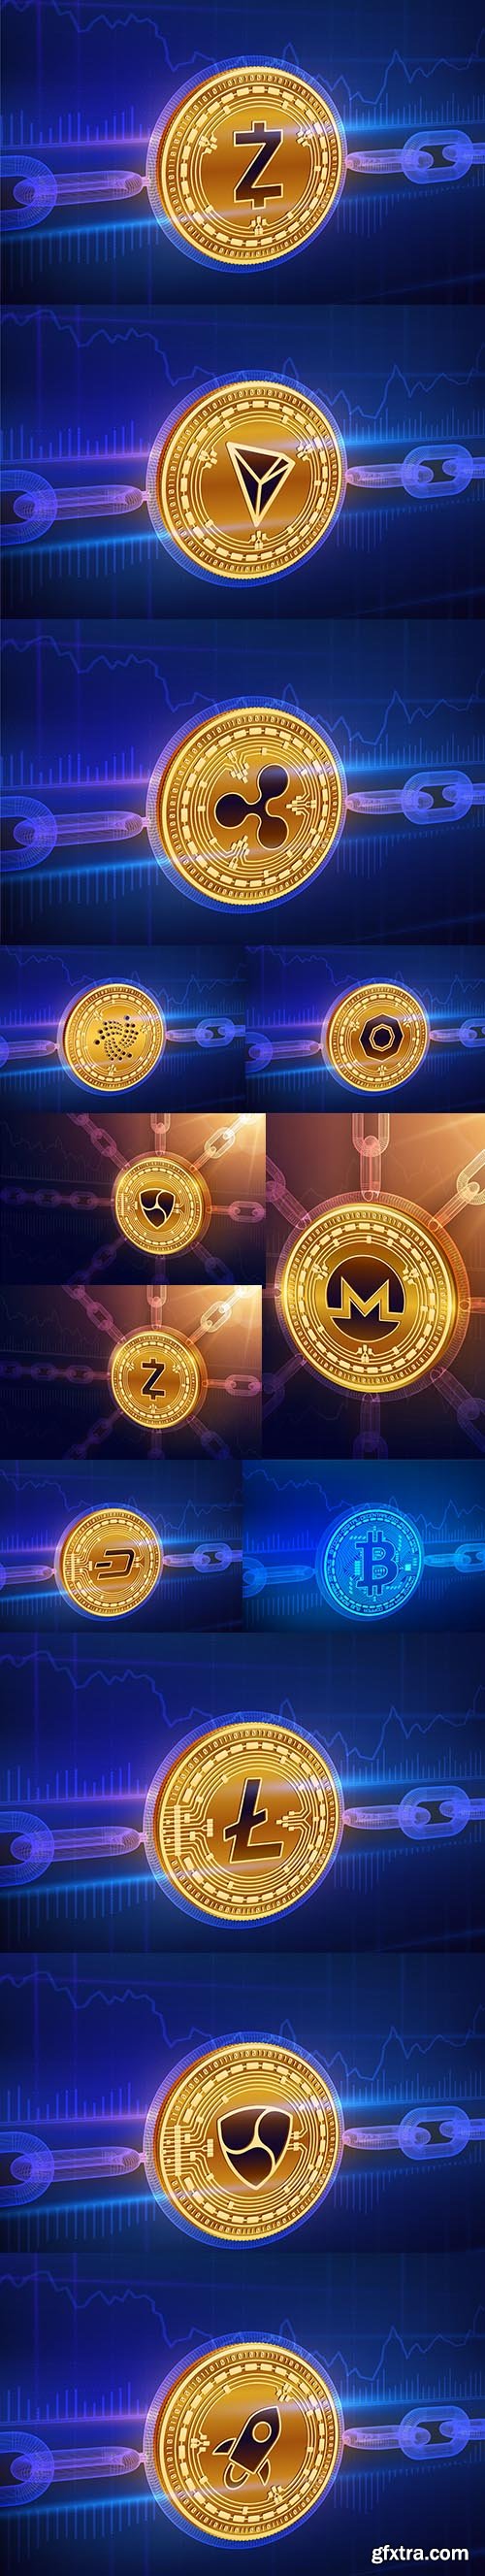 Physical Golden Coin Blockchain Concept